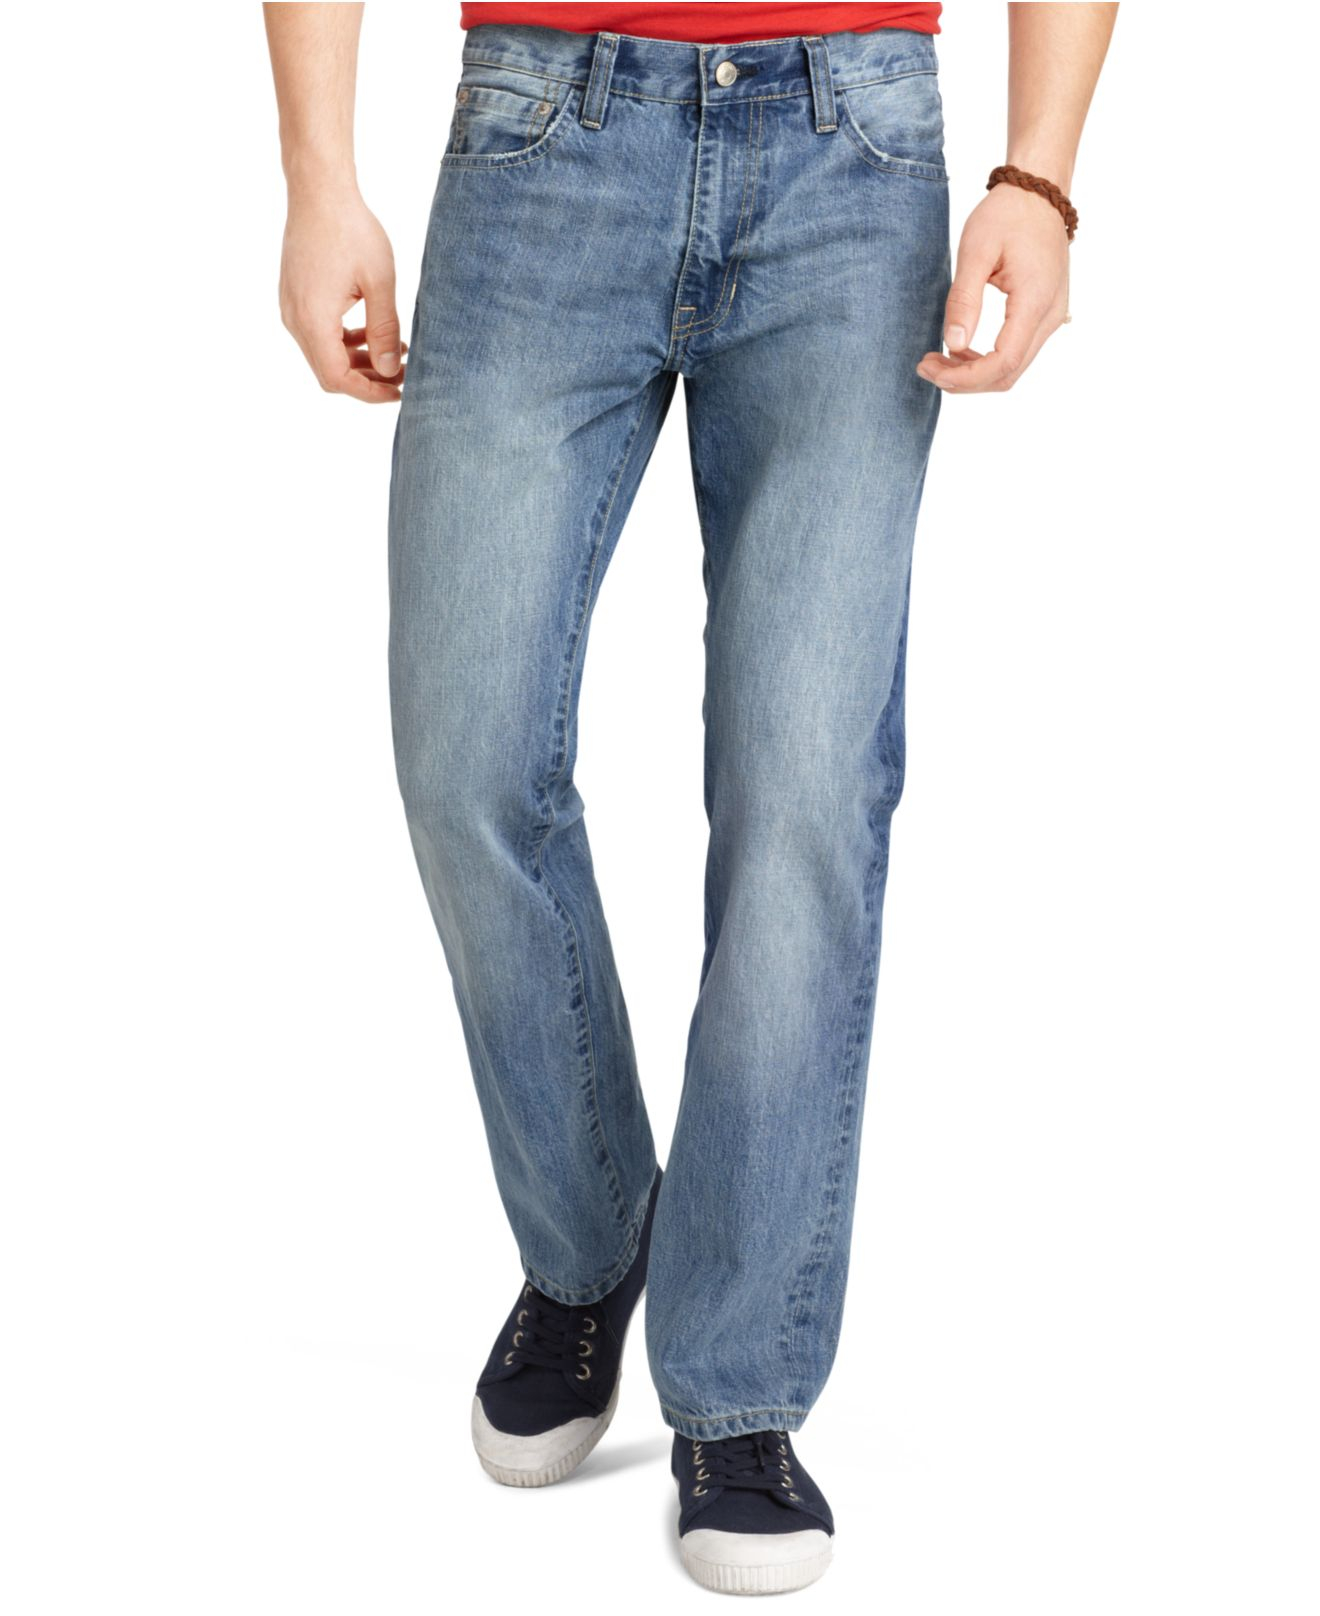 Lyst - Izod Regular-Fit Light Vintage Wash Jeans in Blue for Men